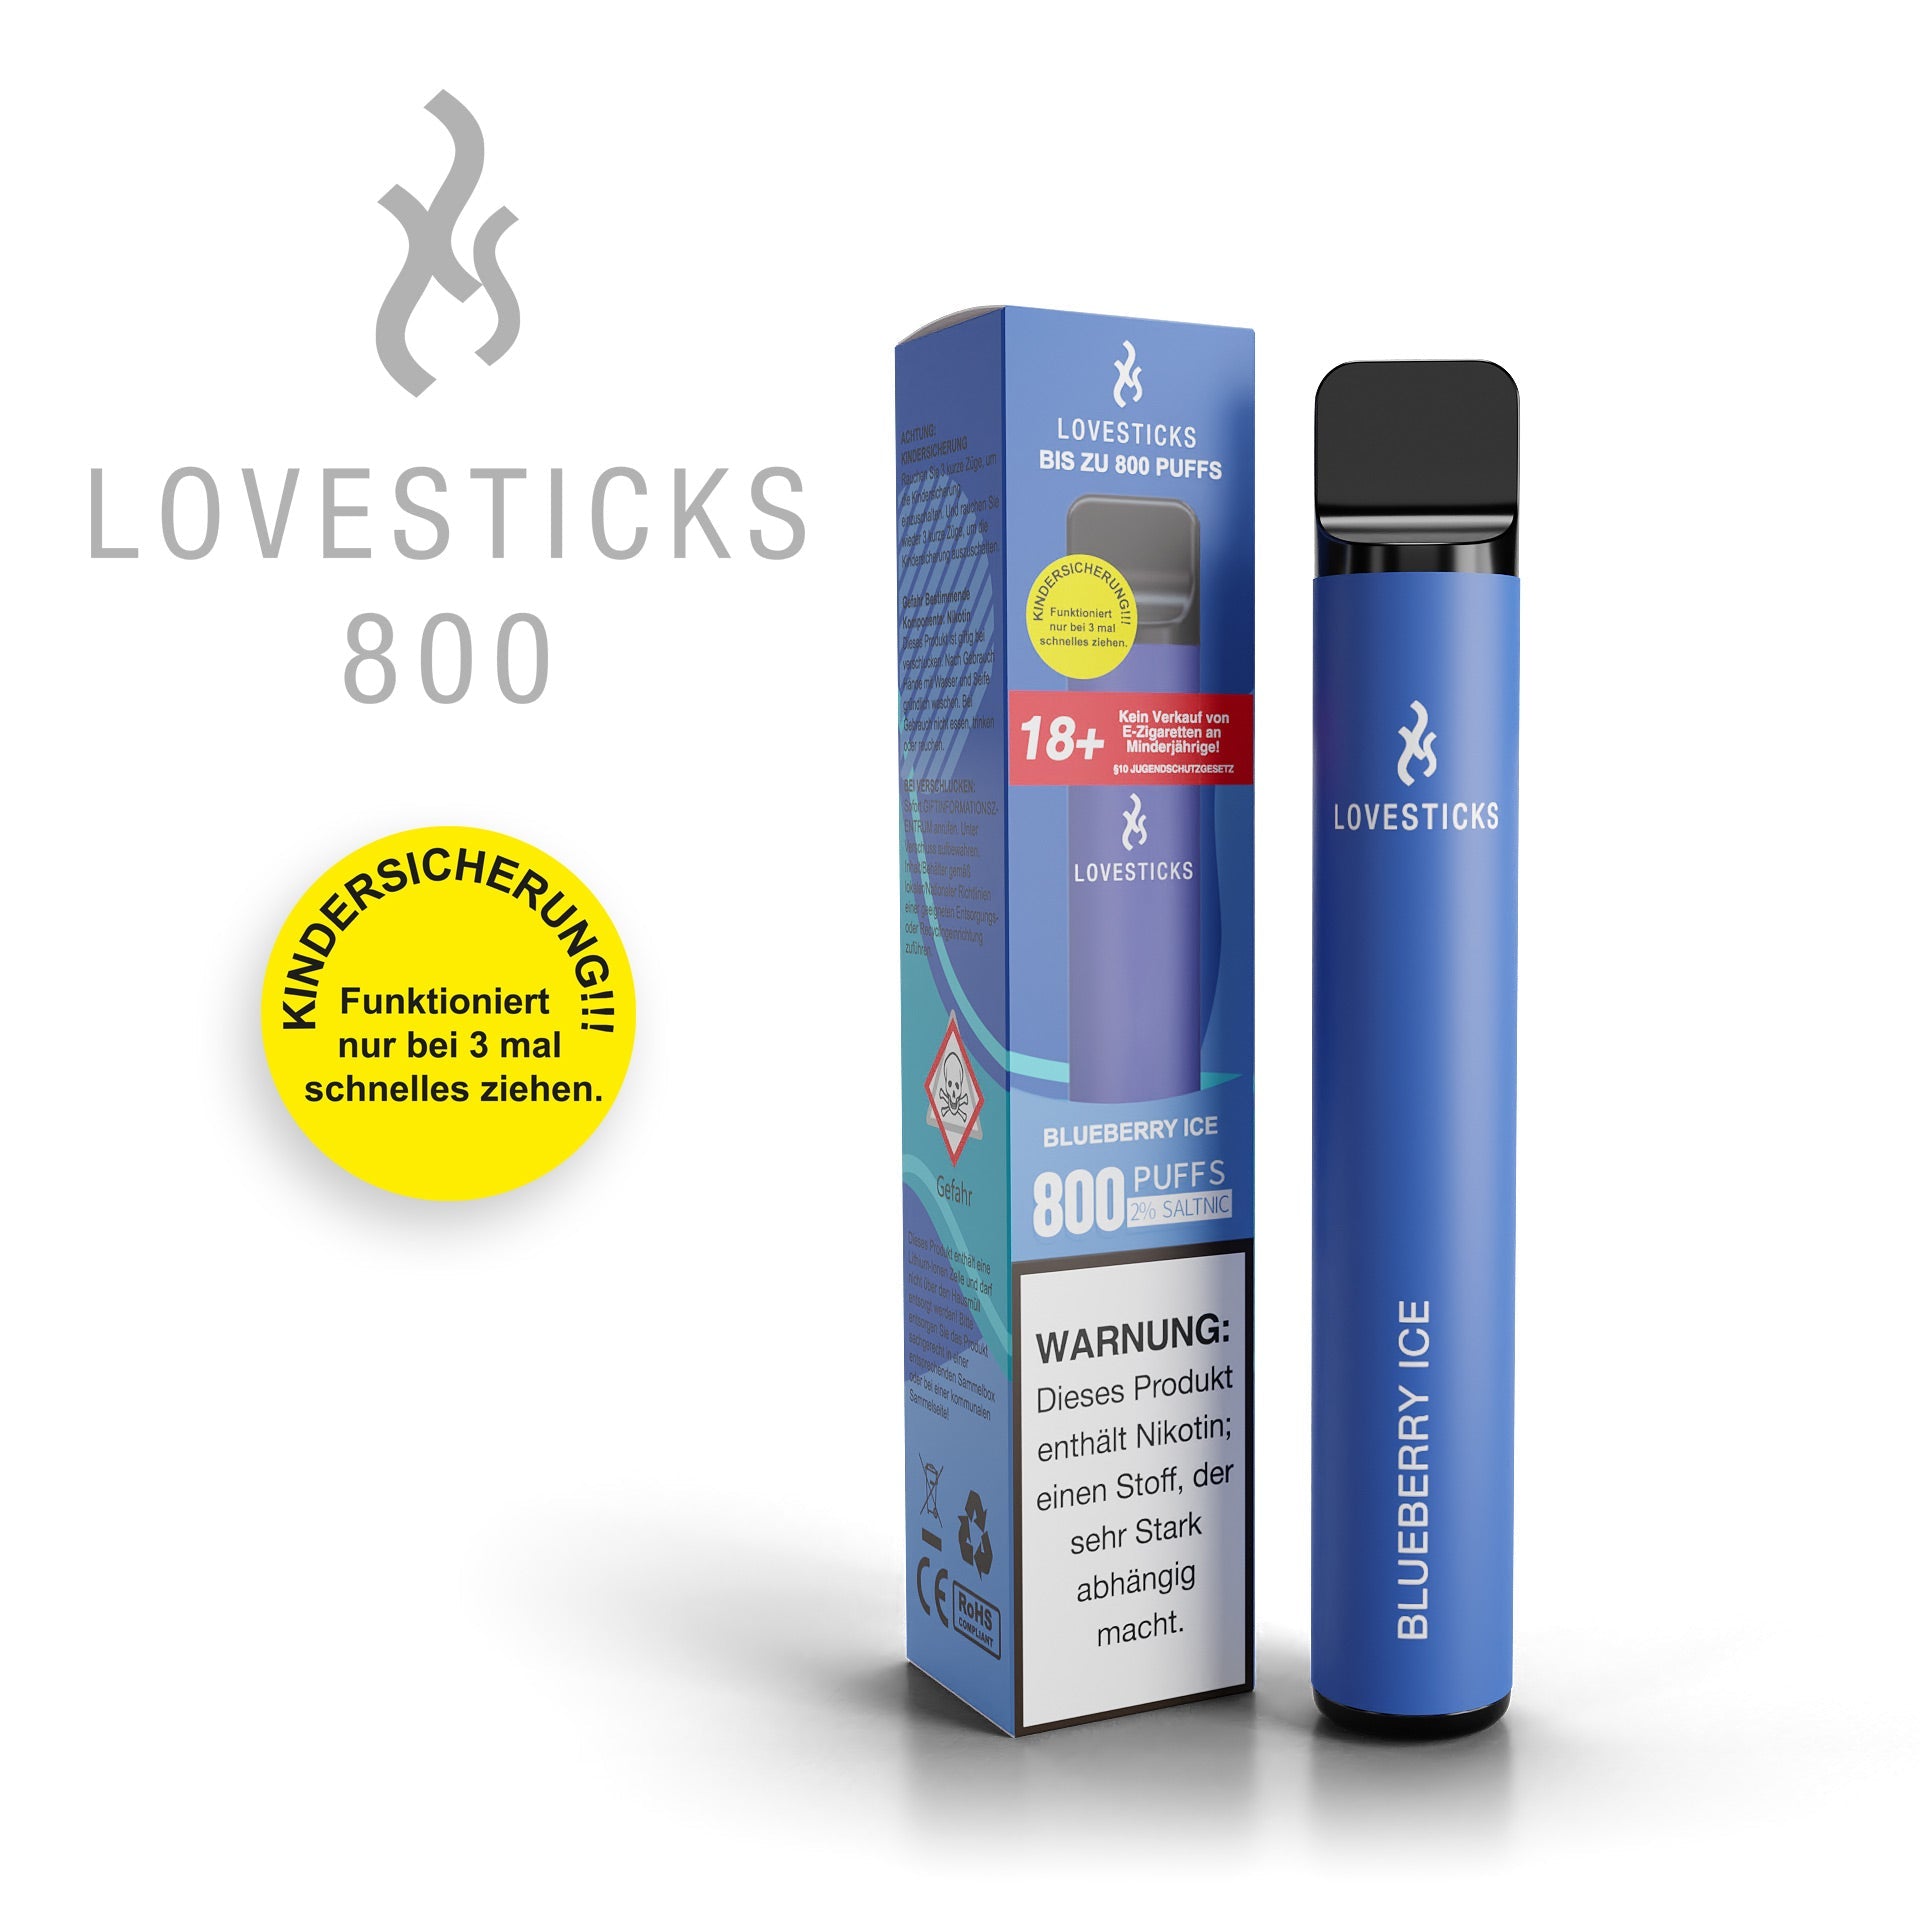 LOVESTICKS 800 – BLUEBERRY ICE E-Zigarette (8125160259879) (8022723756263)